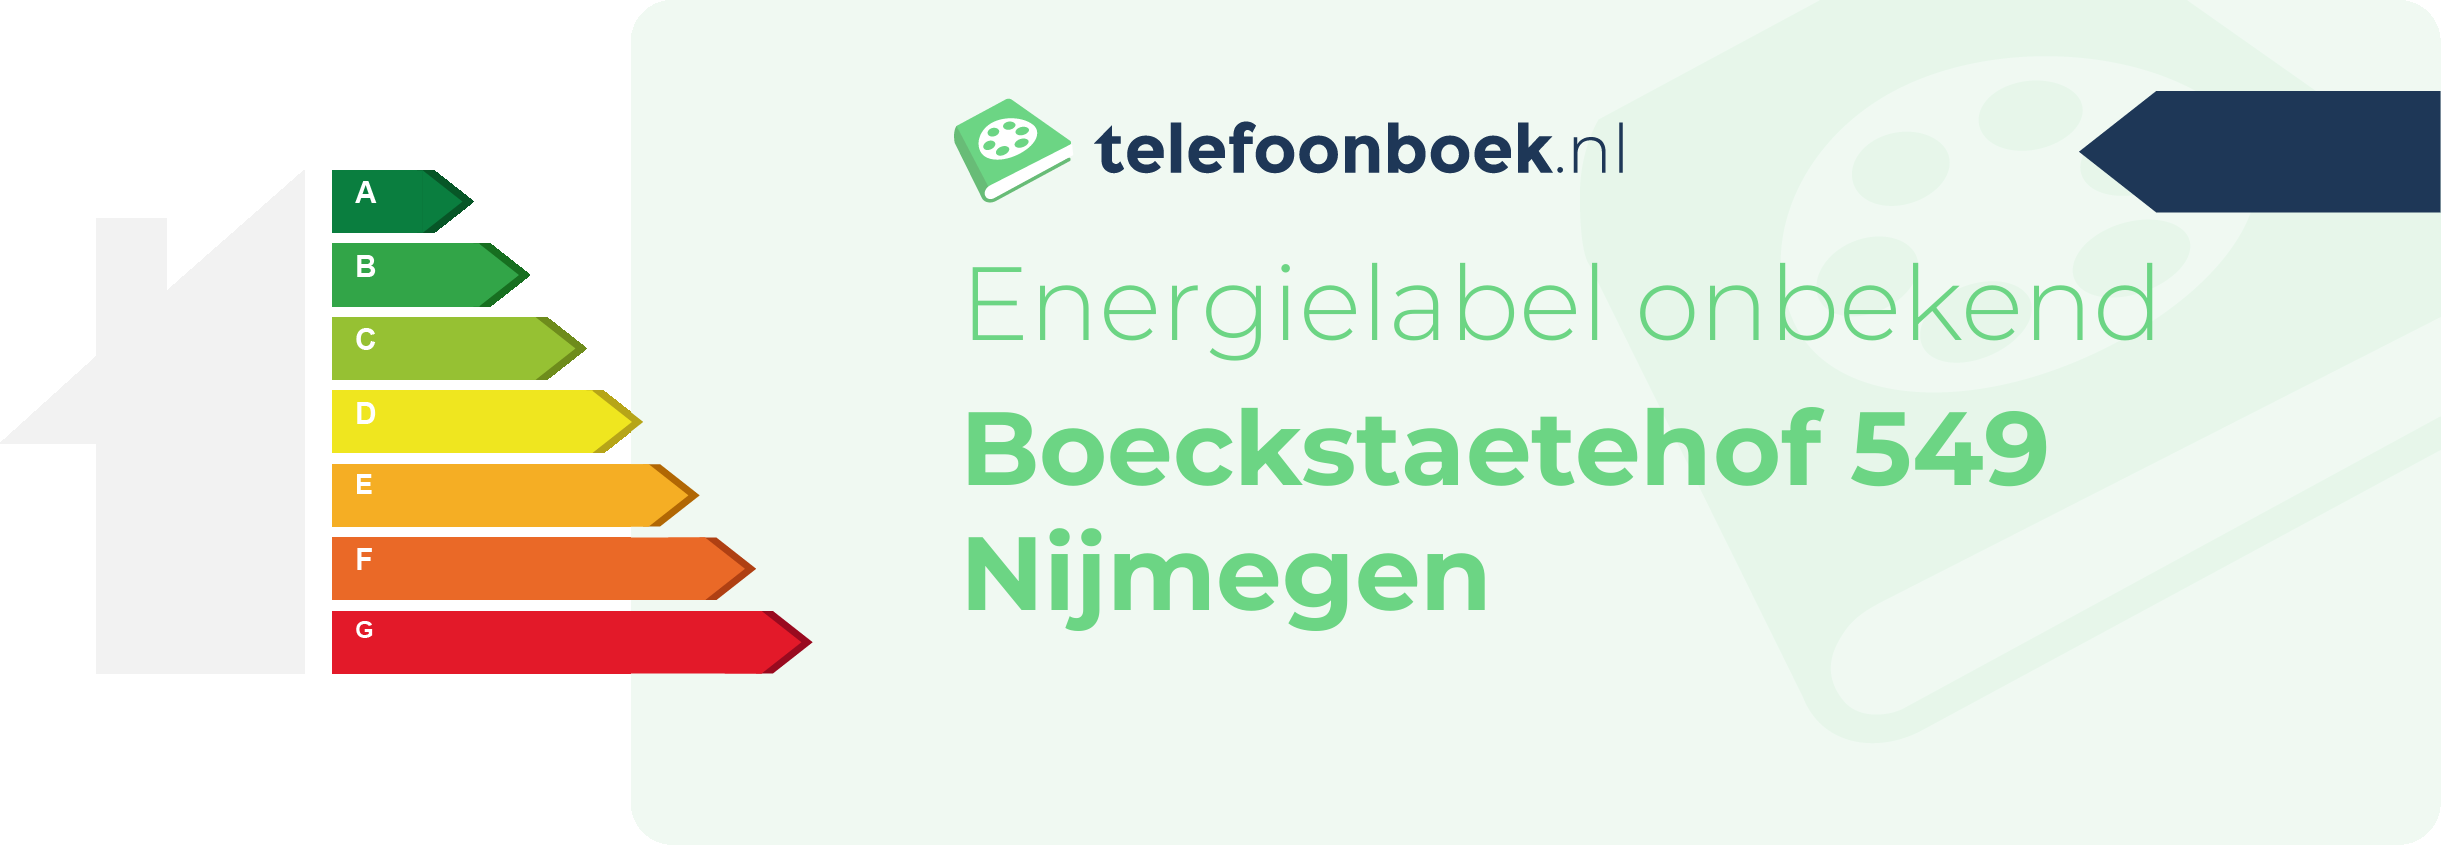 Energielabel Boeckstaetehof 549 Nijmegen